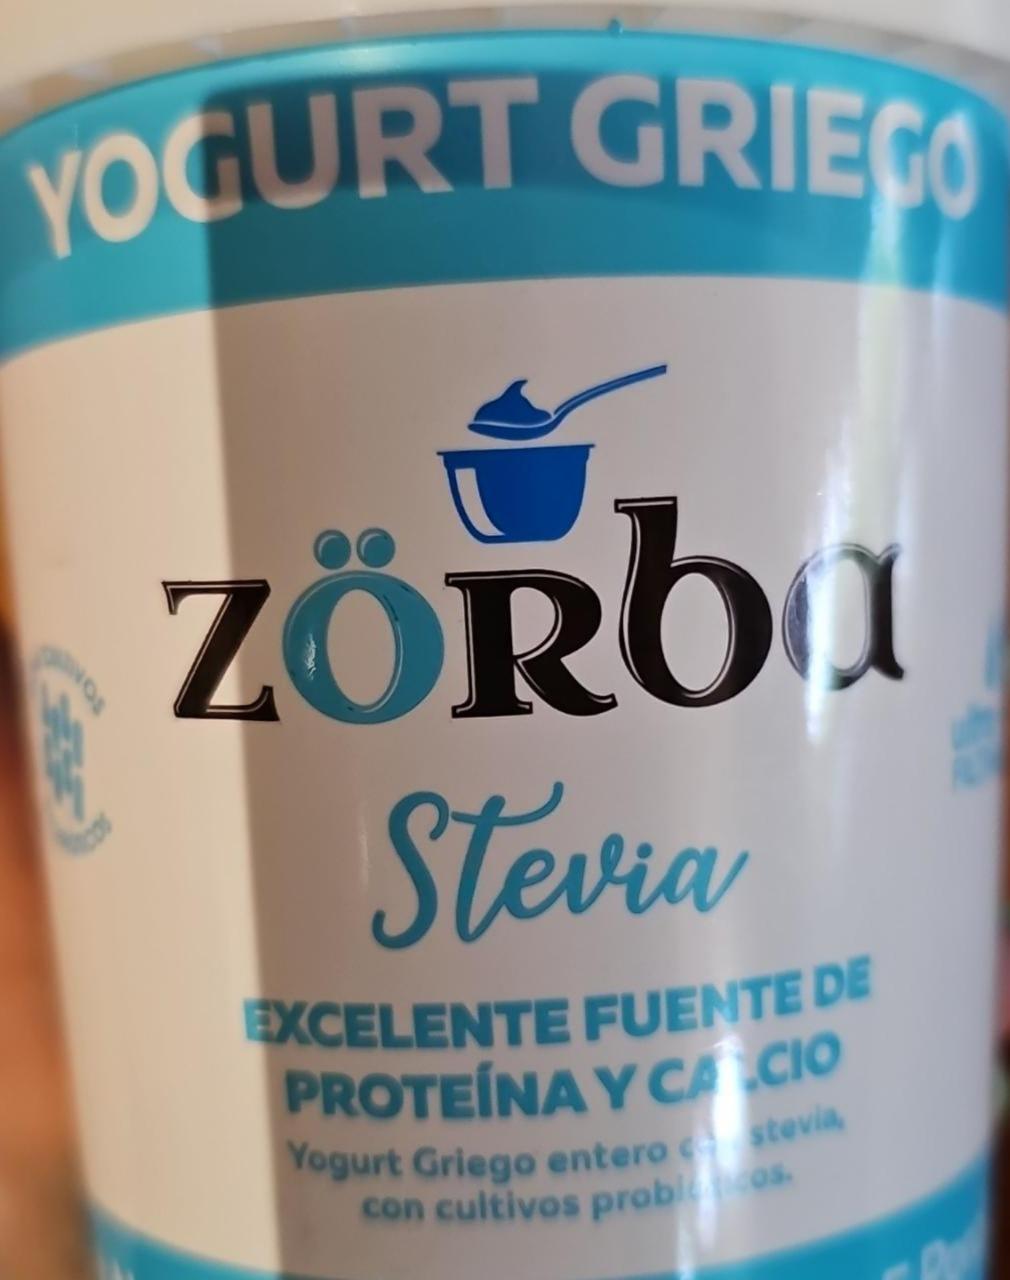 Fotografie - Yogurt griego Stevia Zörba